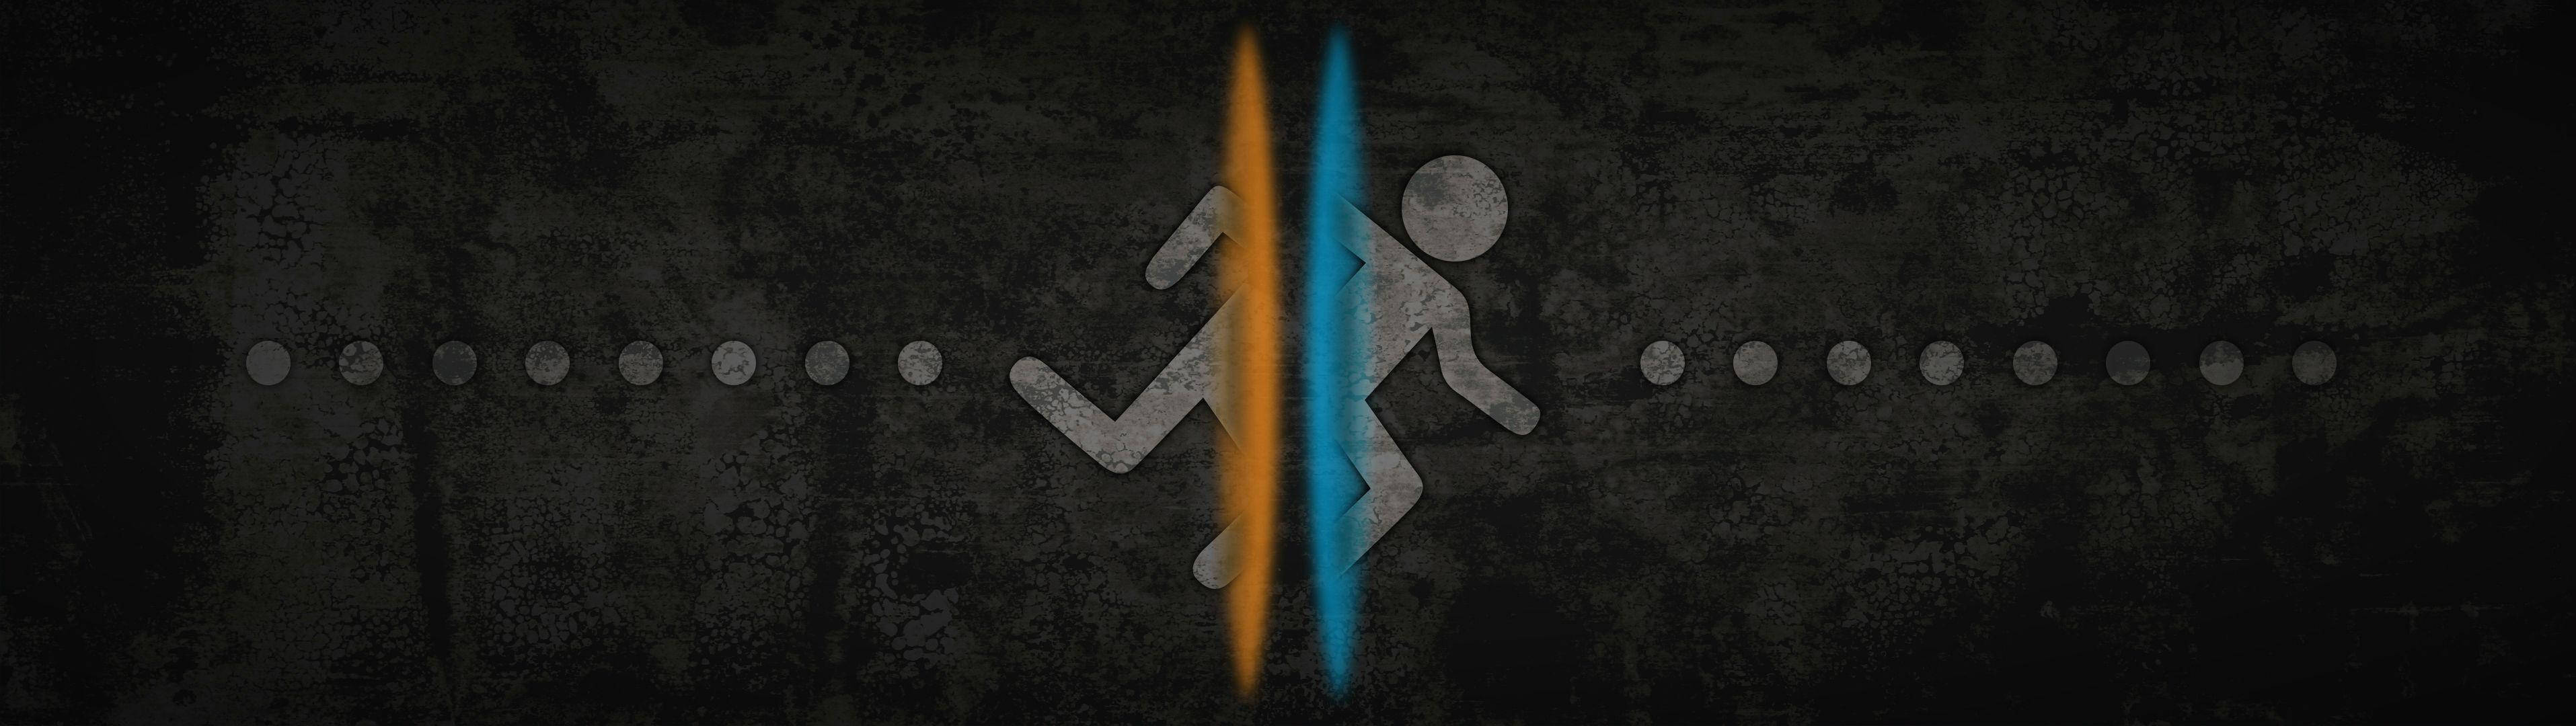 Running Man Portal Dual Monitor Wallpaper